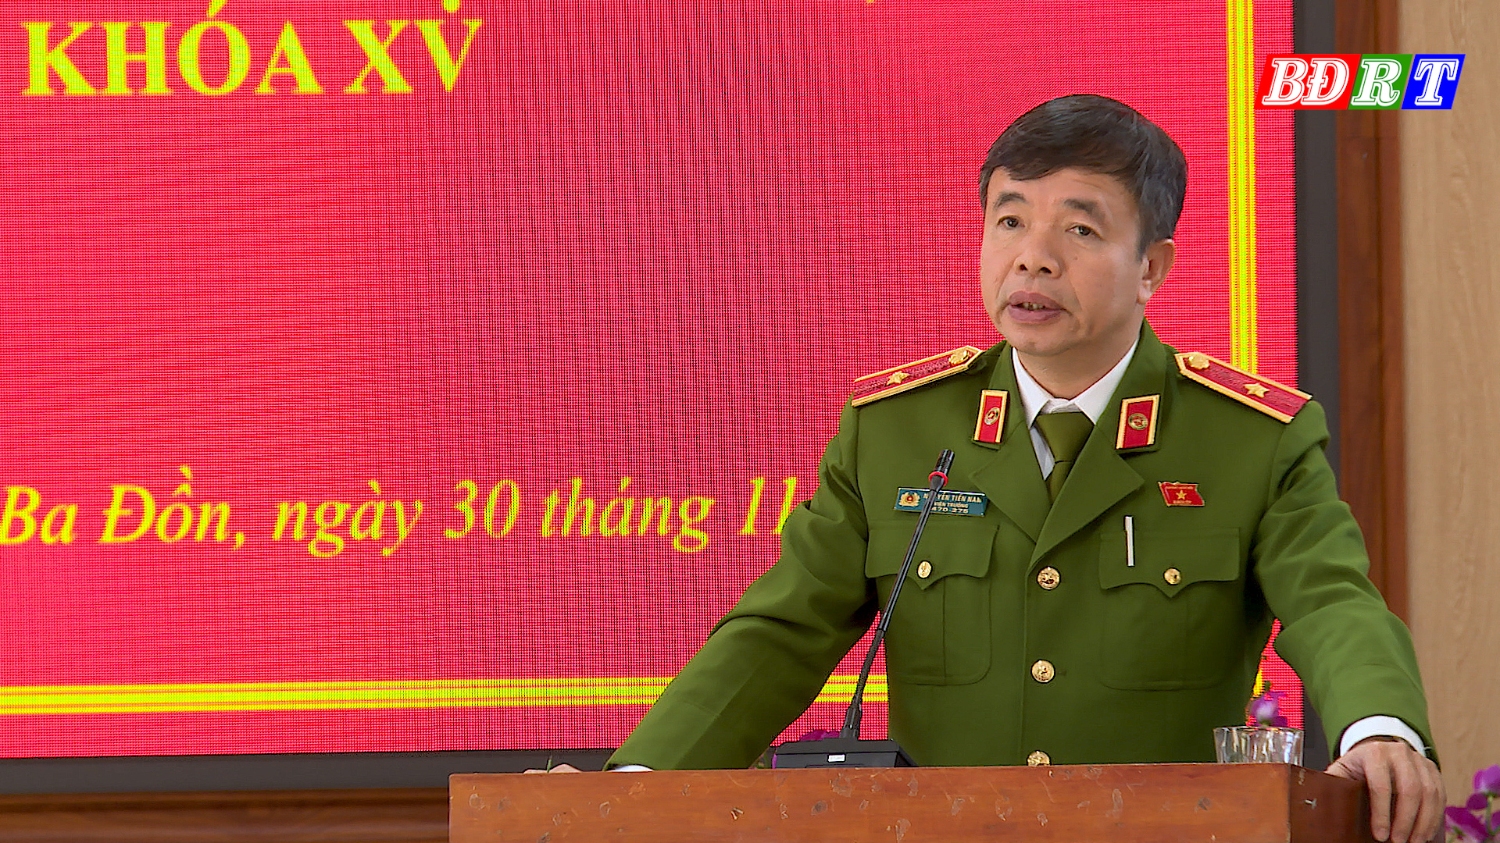 Thiếu tướng Nguyễn Tiến Nam, Viện trưởng Viện khoa học hình sự (Bộ Công an) tiếp thu các ý kiến tổng hợp chuyển đến các bộ, ngành chức năng xem xét giải quyết